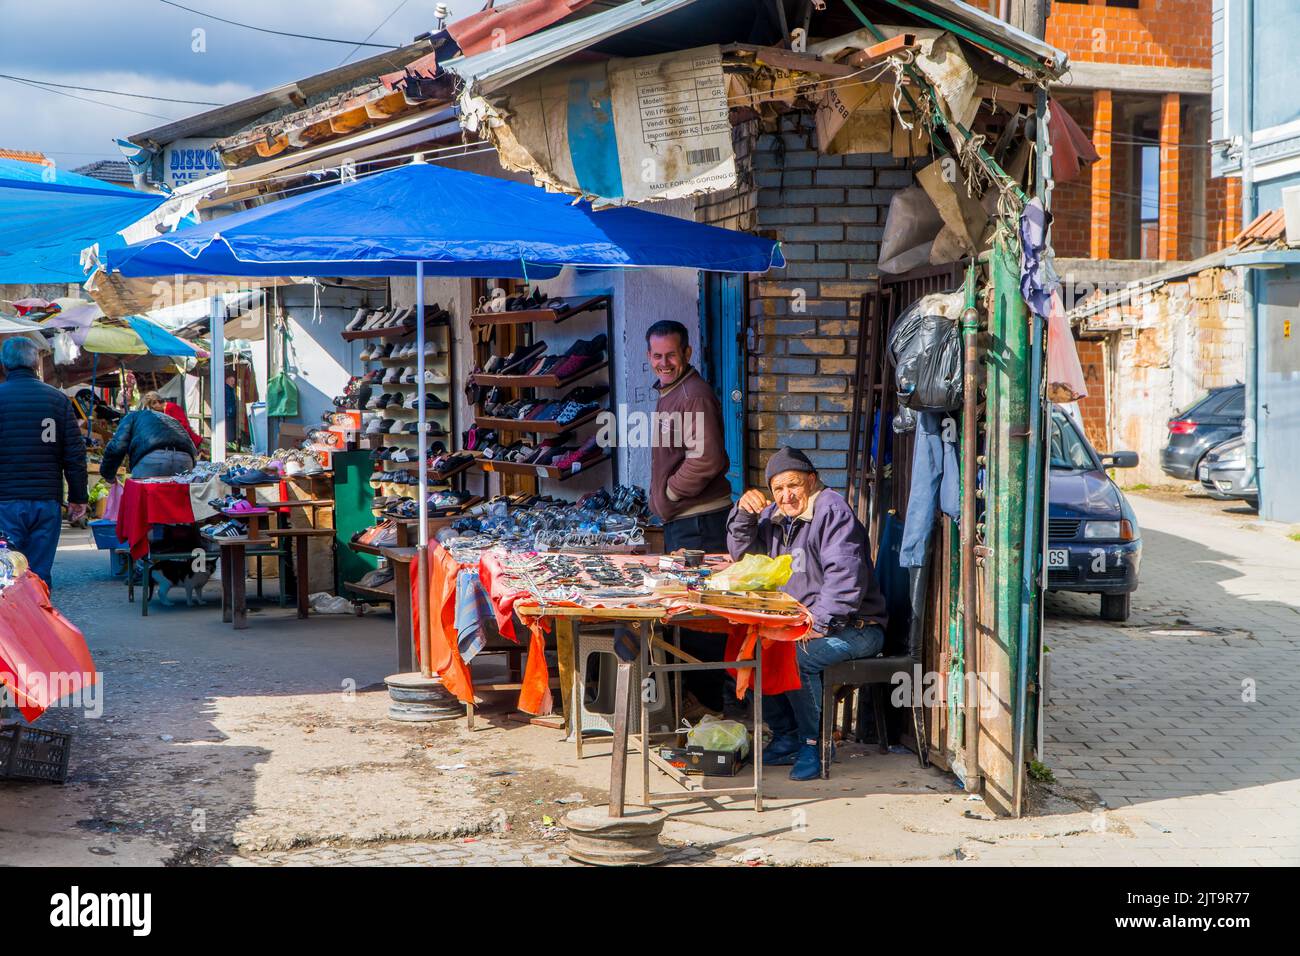 A view of the local market in Pristina, Kosovo Stock Photo